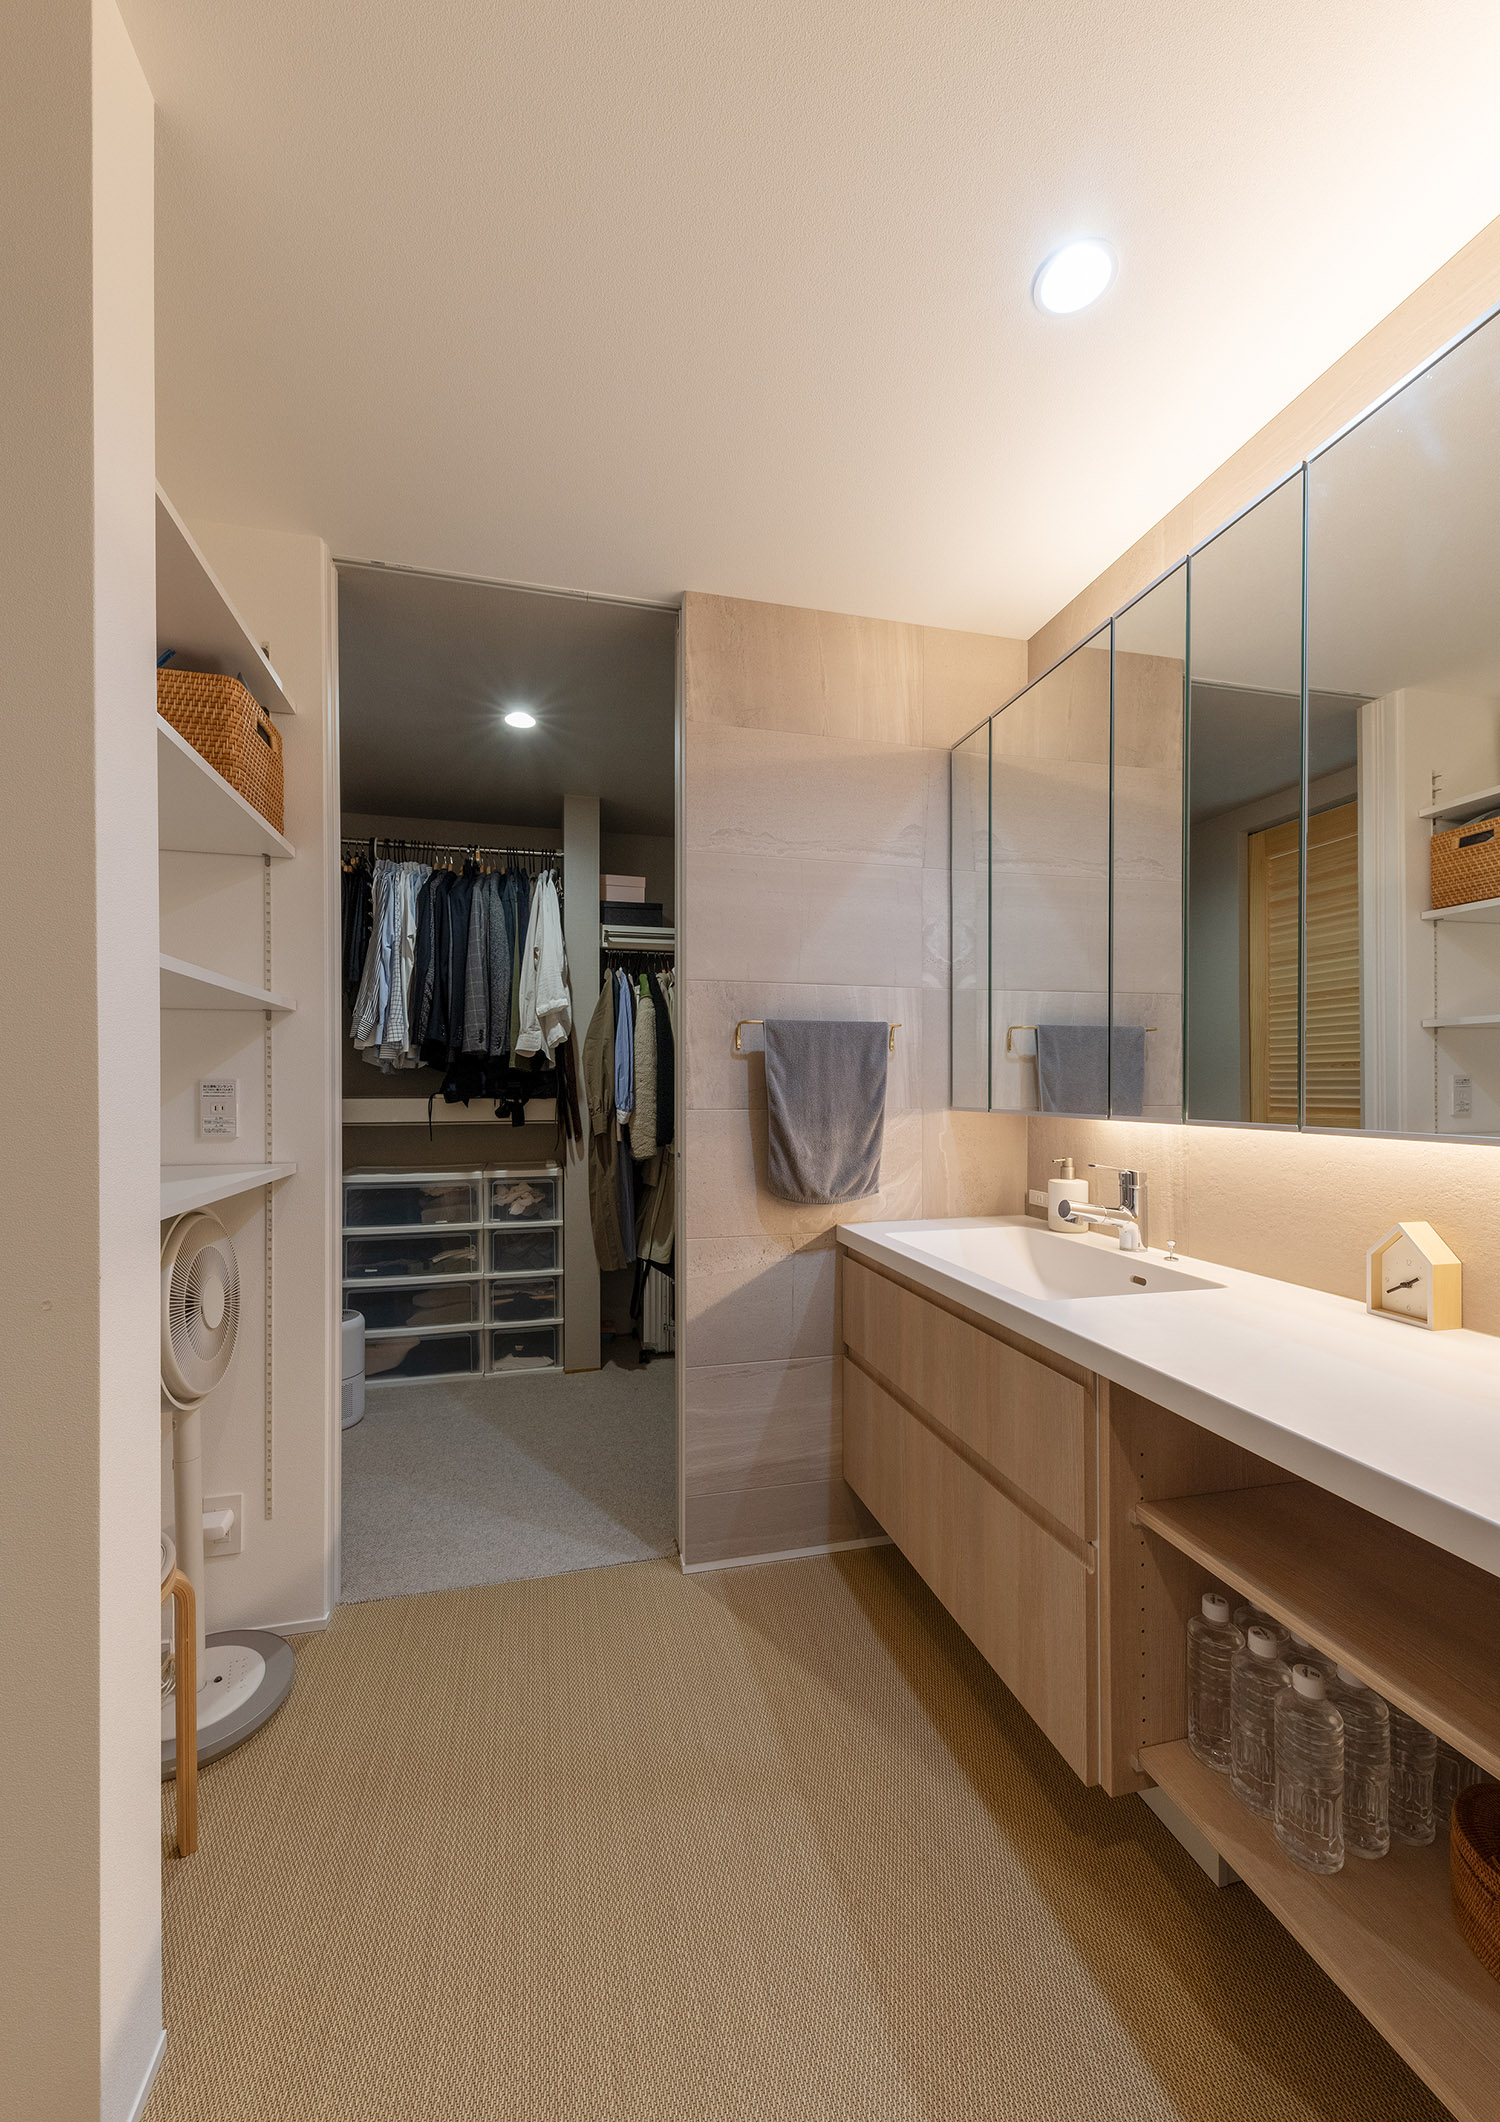 洗面所の奥にファミリークローゼットを取り付けた家事動線を効率化したデザイン・デザイン住宅